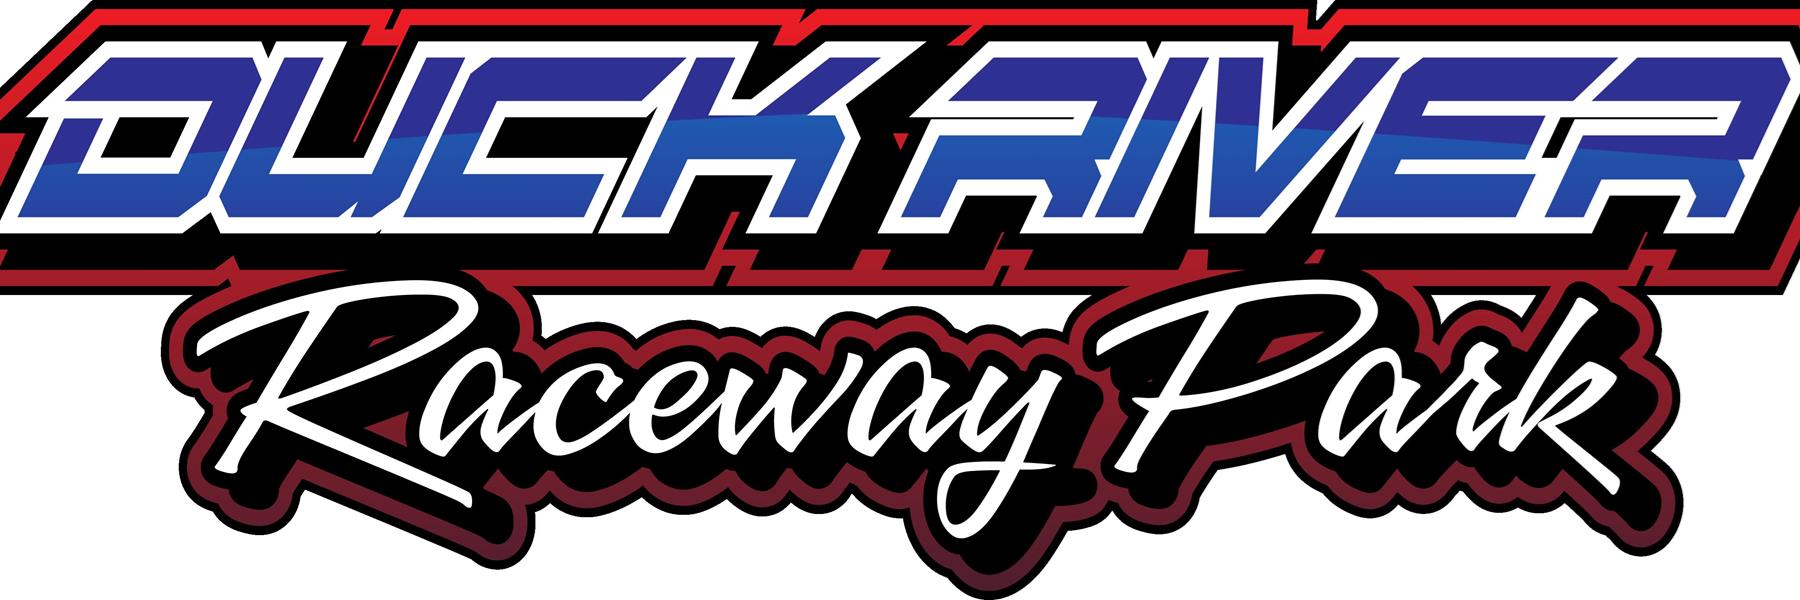 8/13/2022 - Duck River Raceway Park